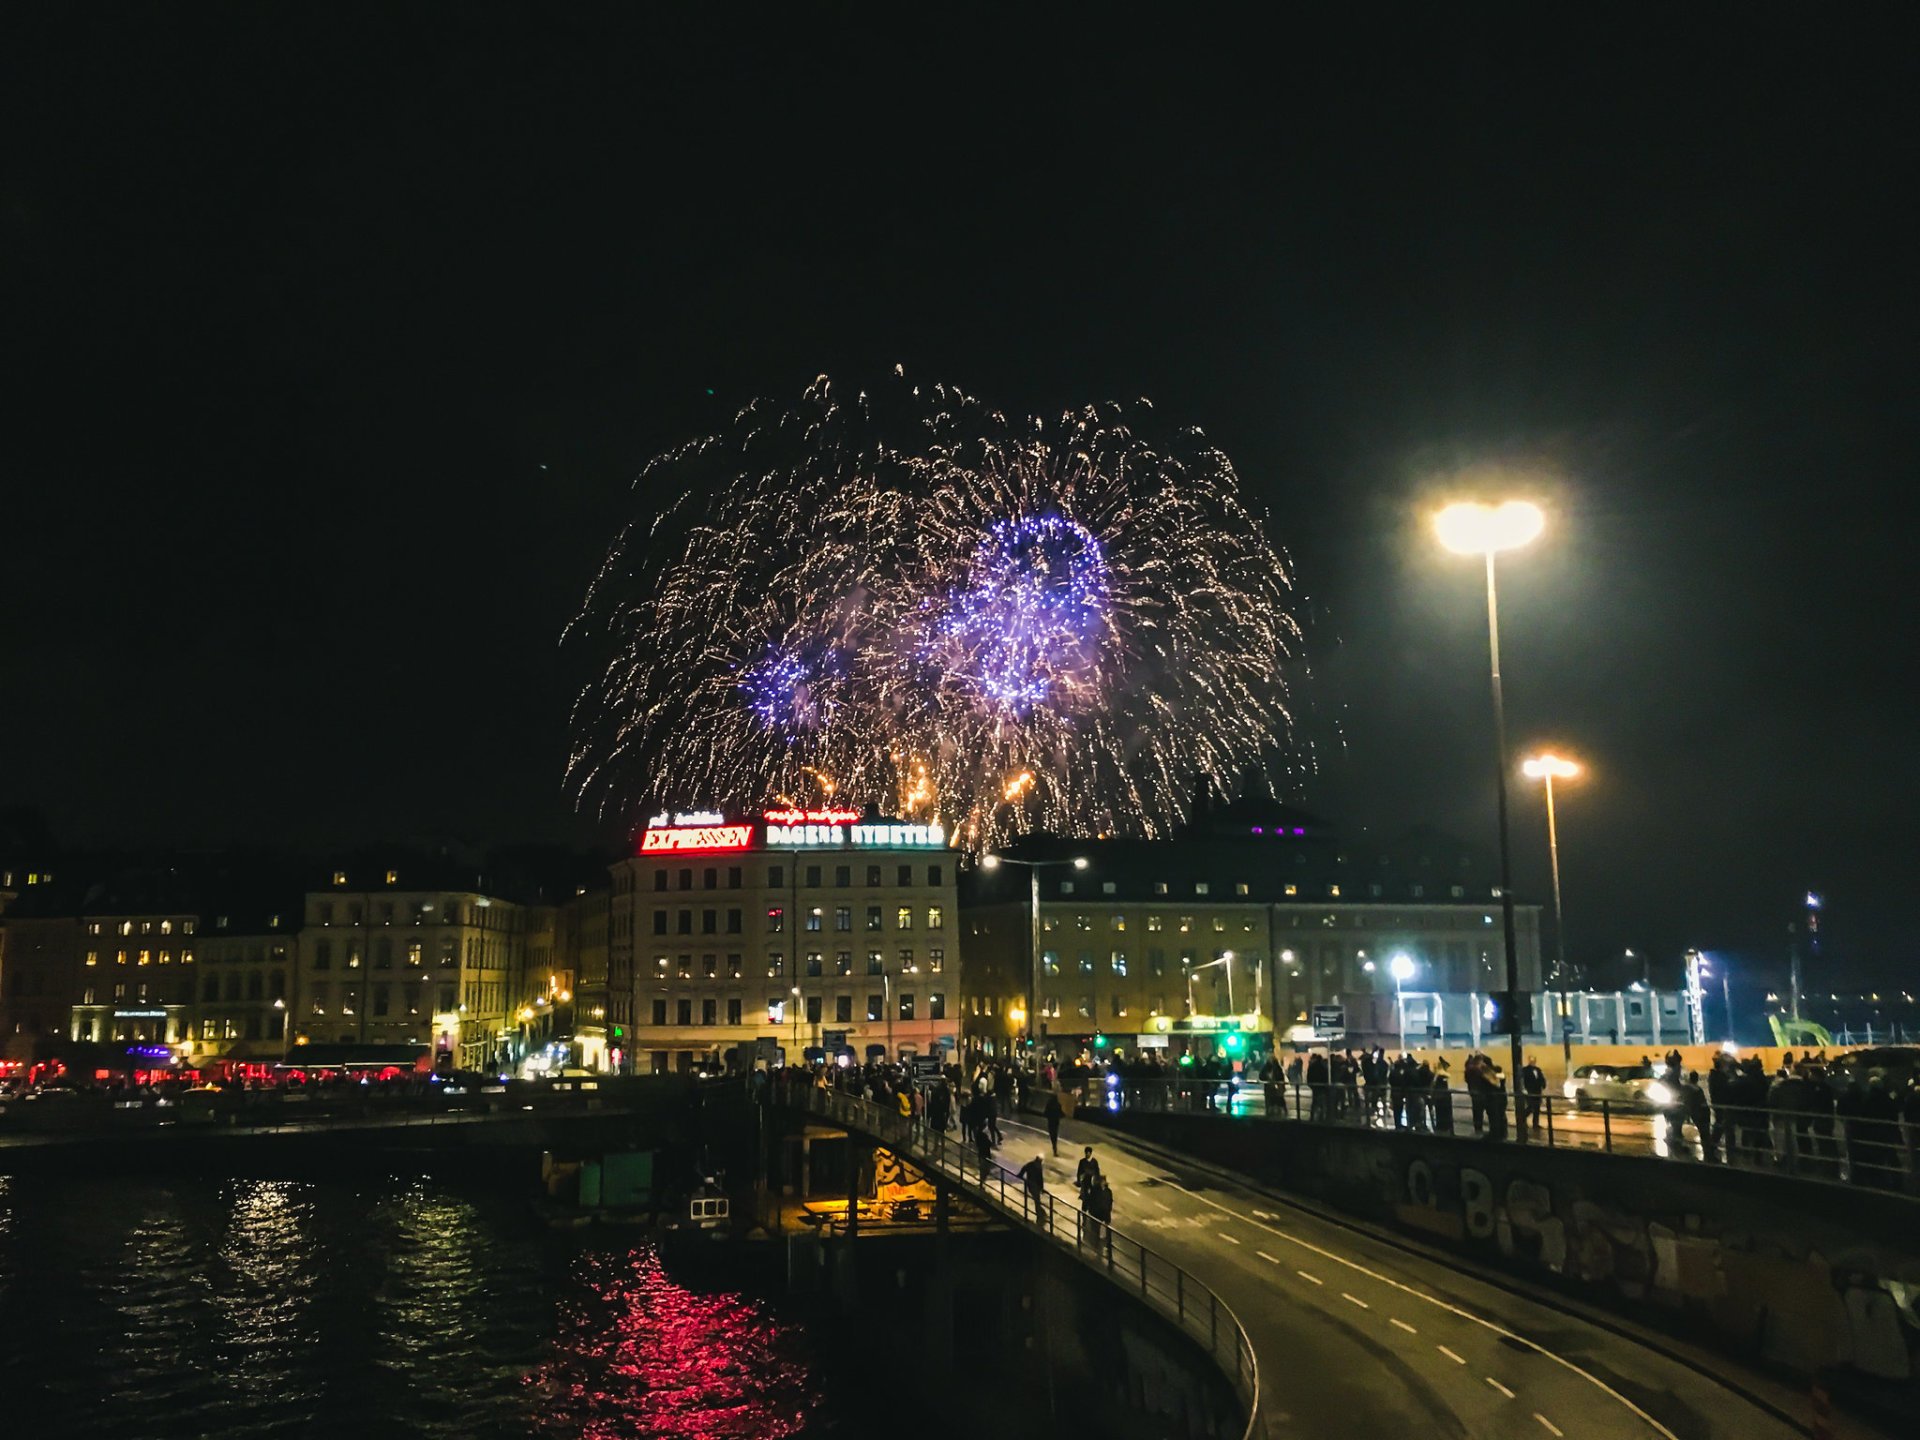 Réveillon de Nouvel An à Stockholm